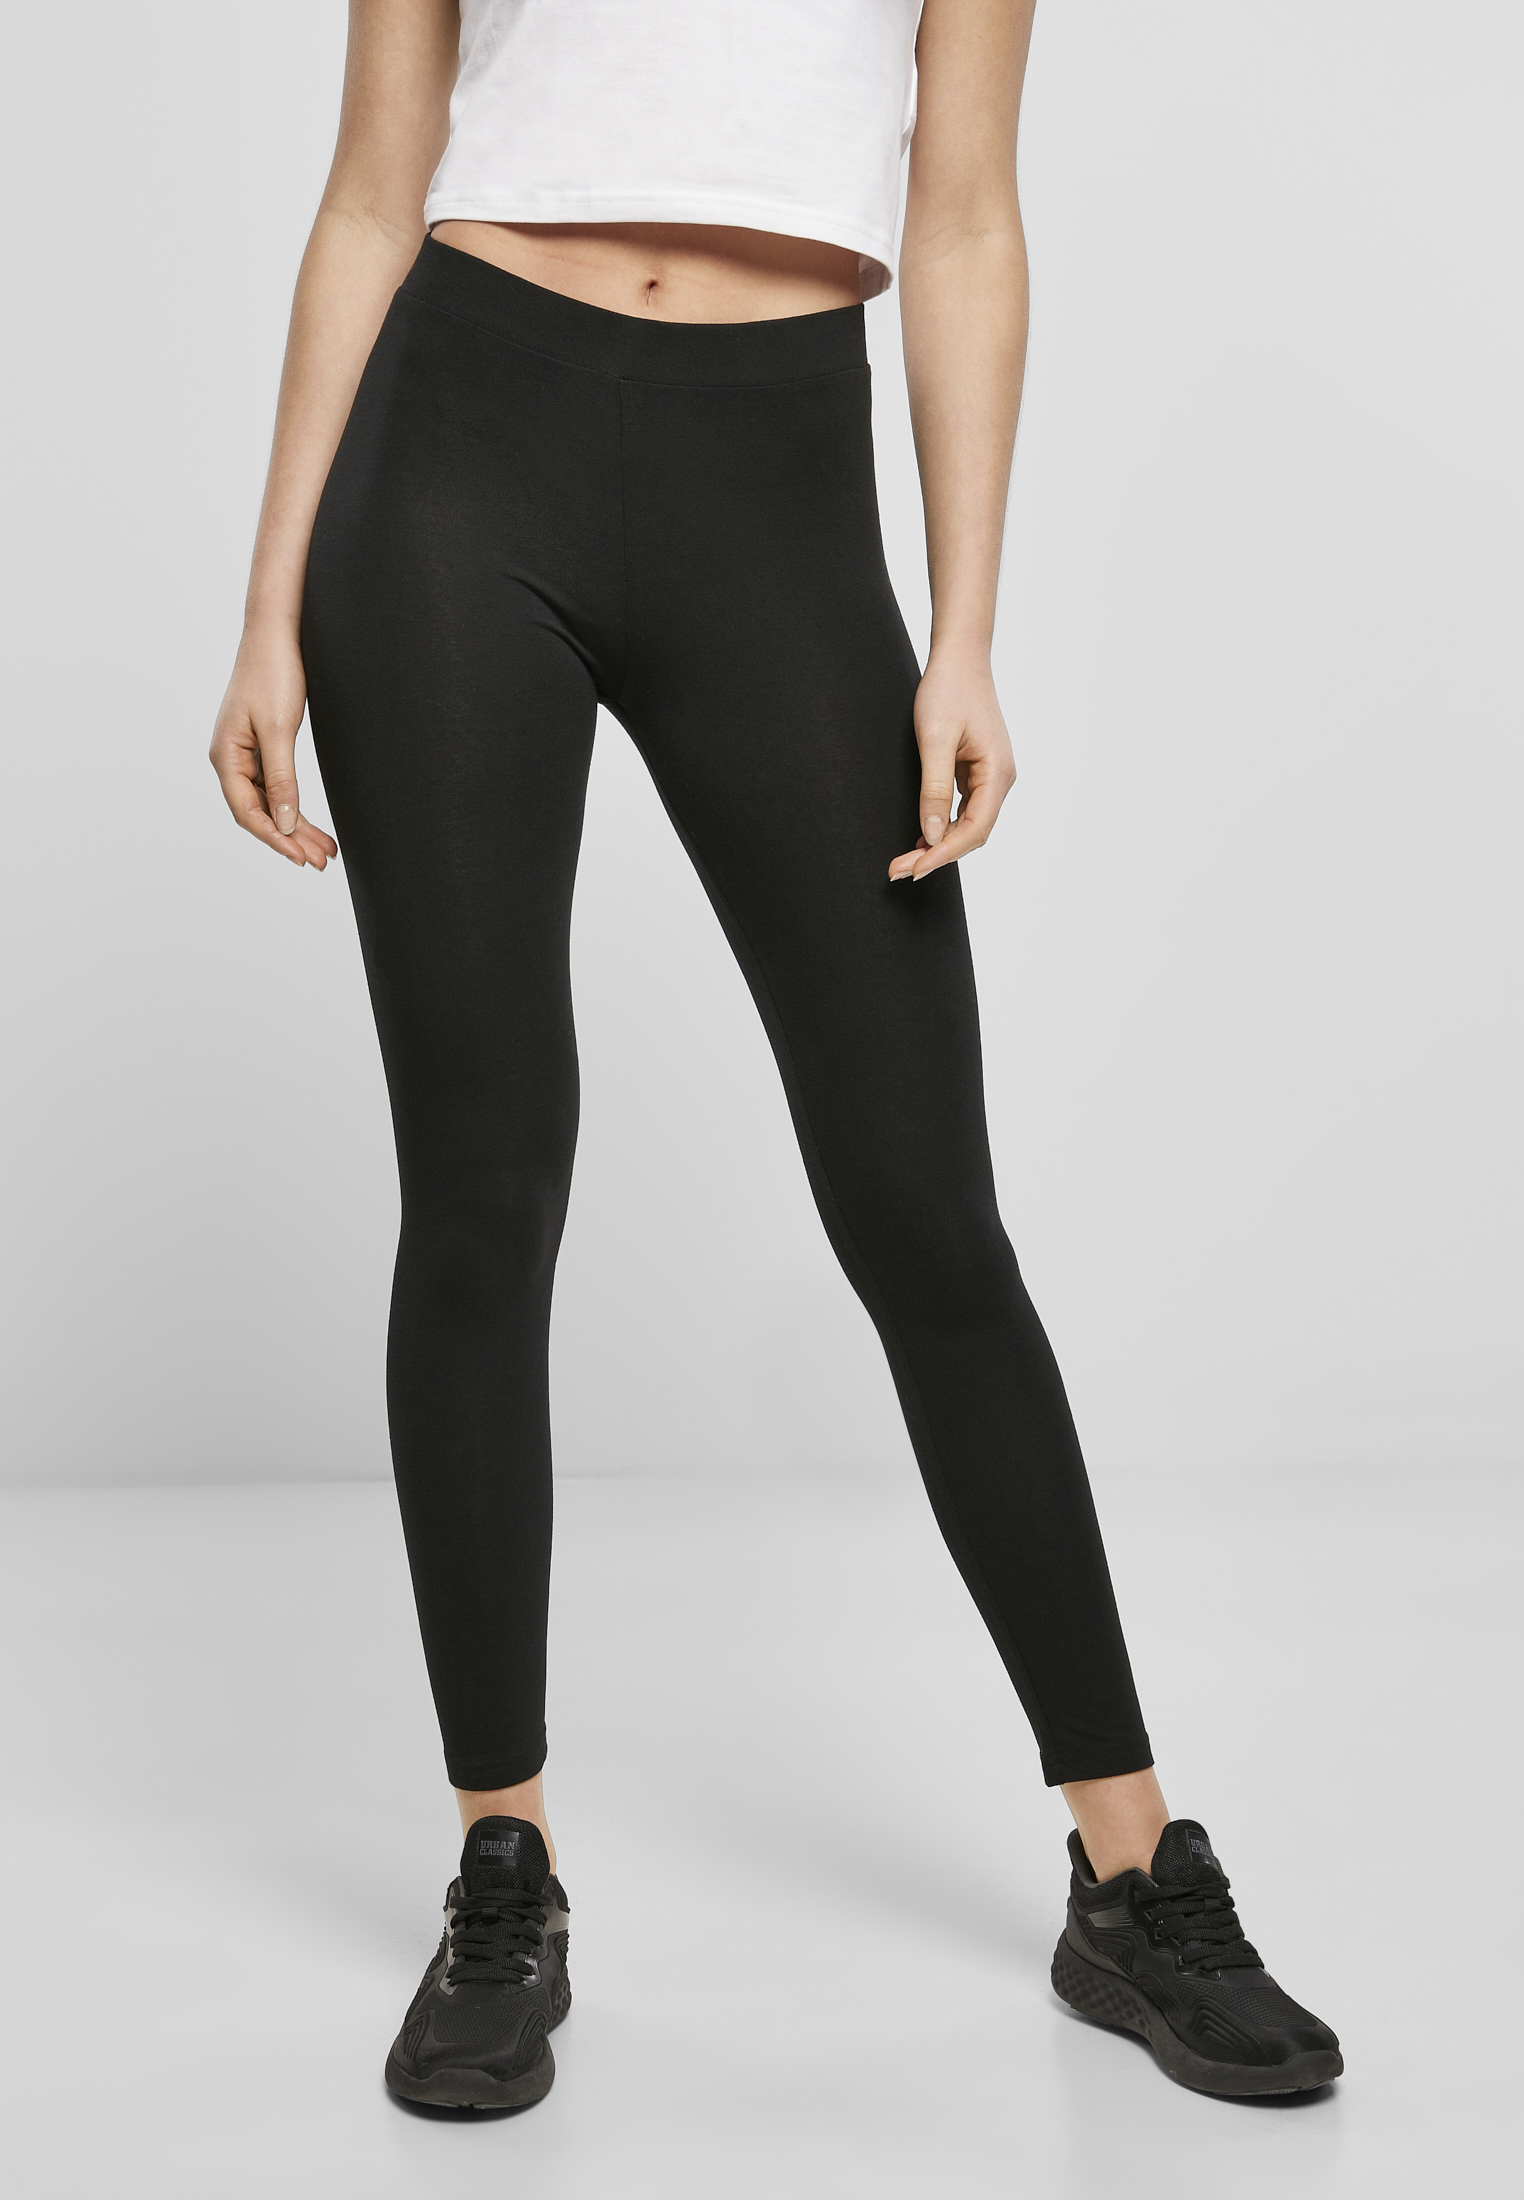 Women's stretch Jersey leggings - KS Teamwear